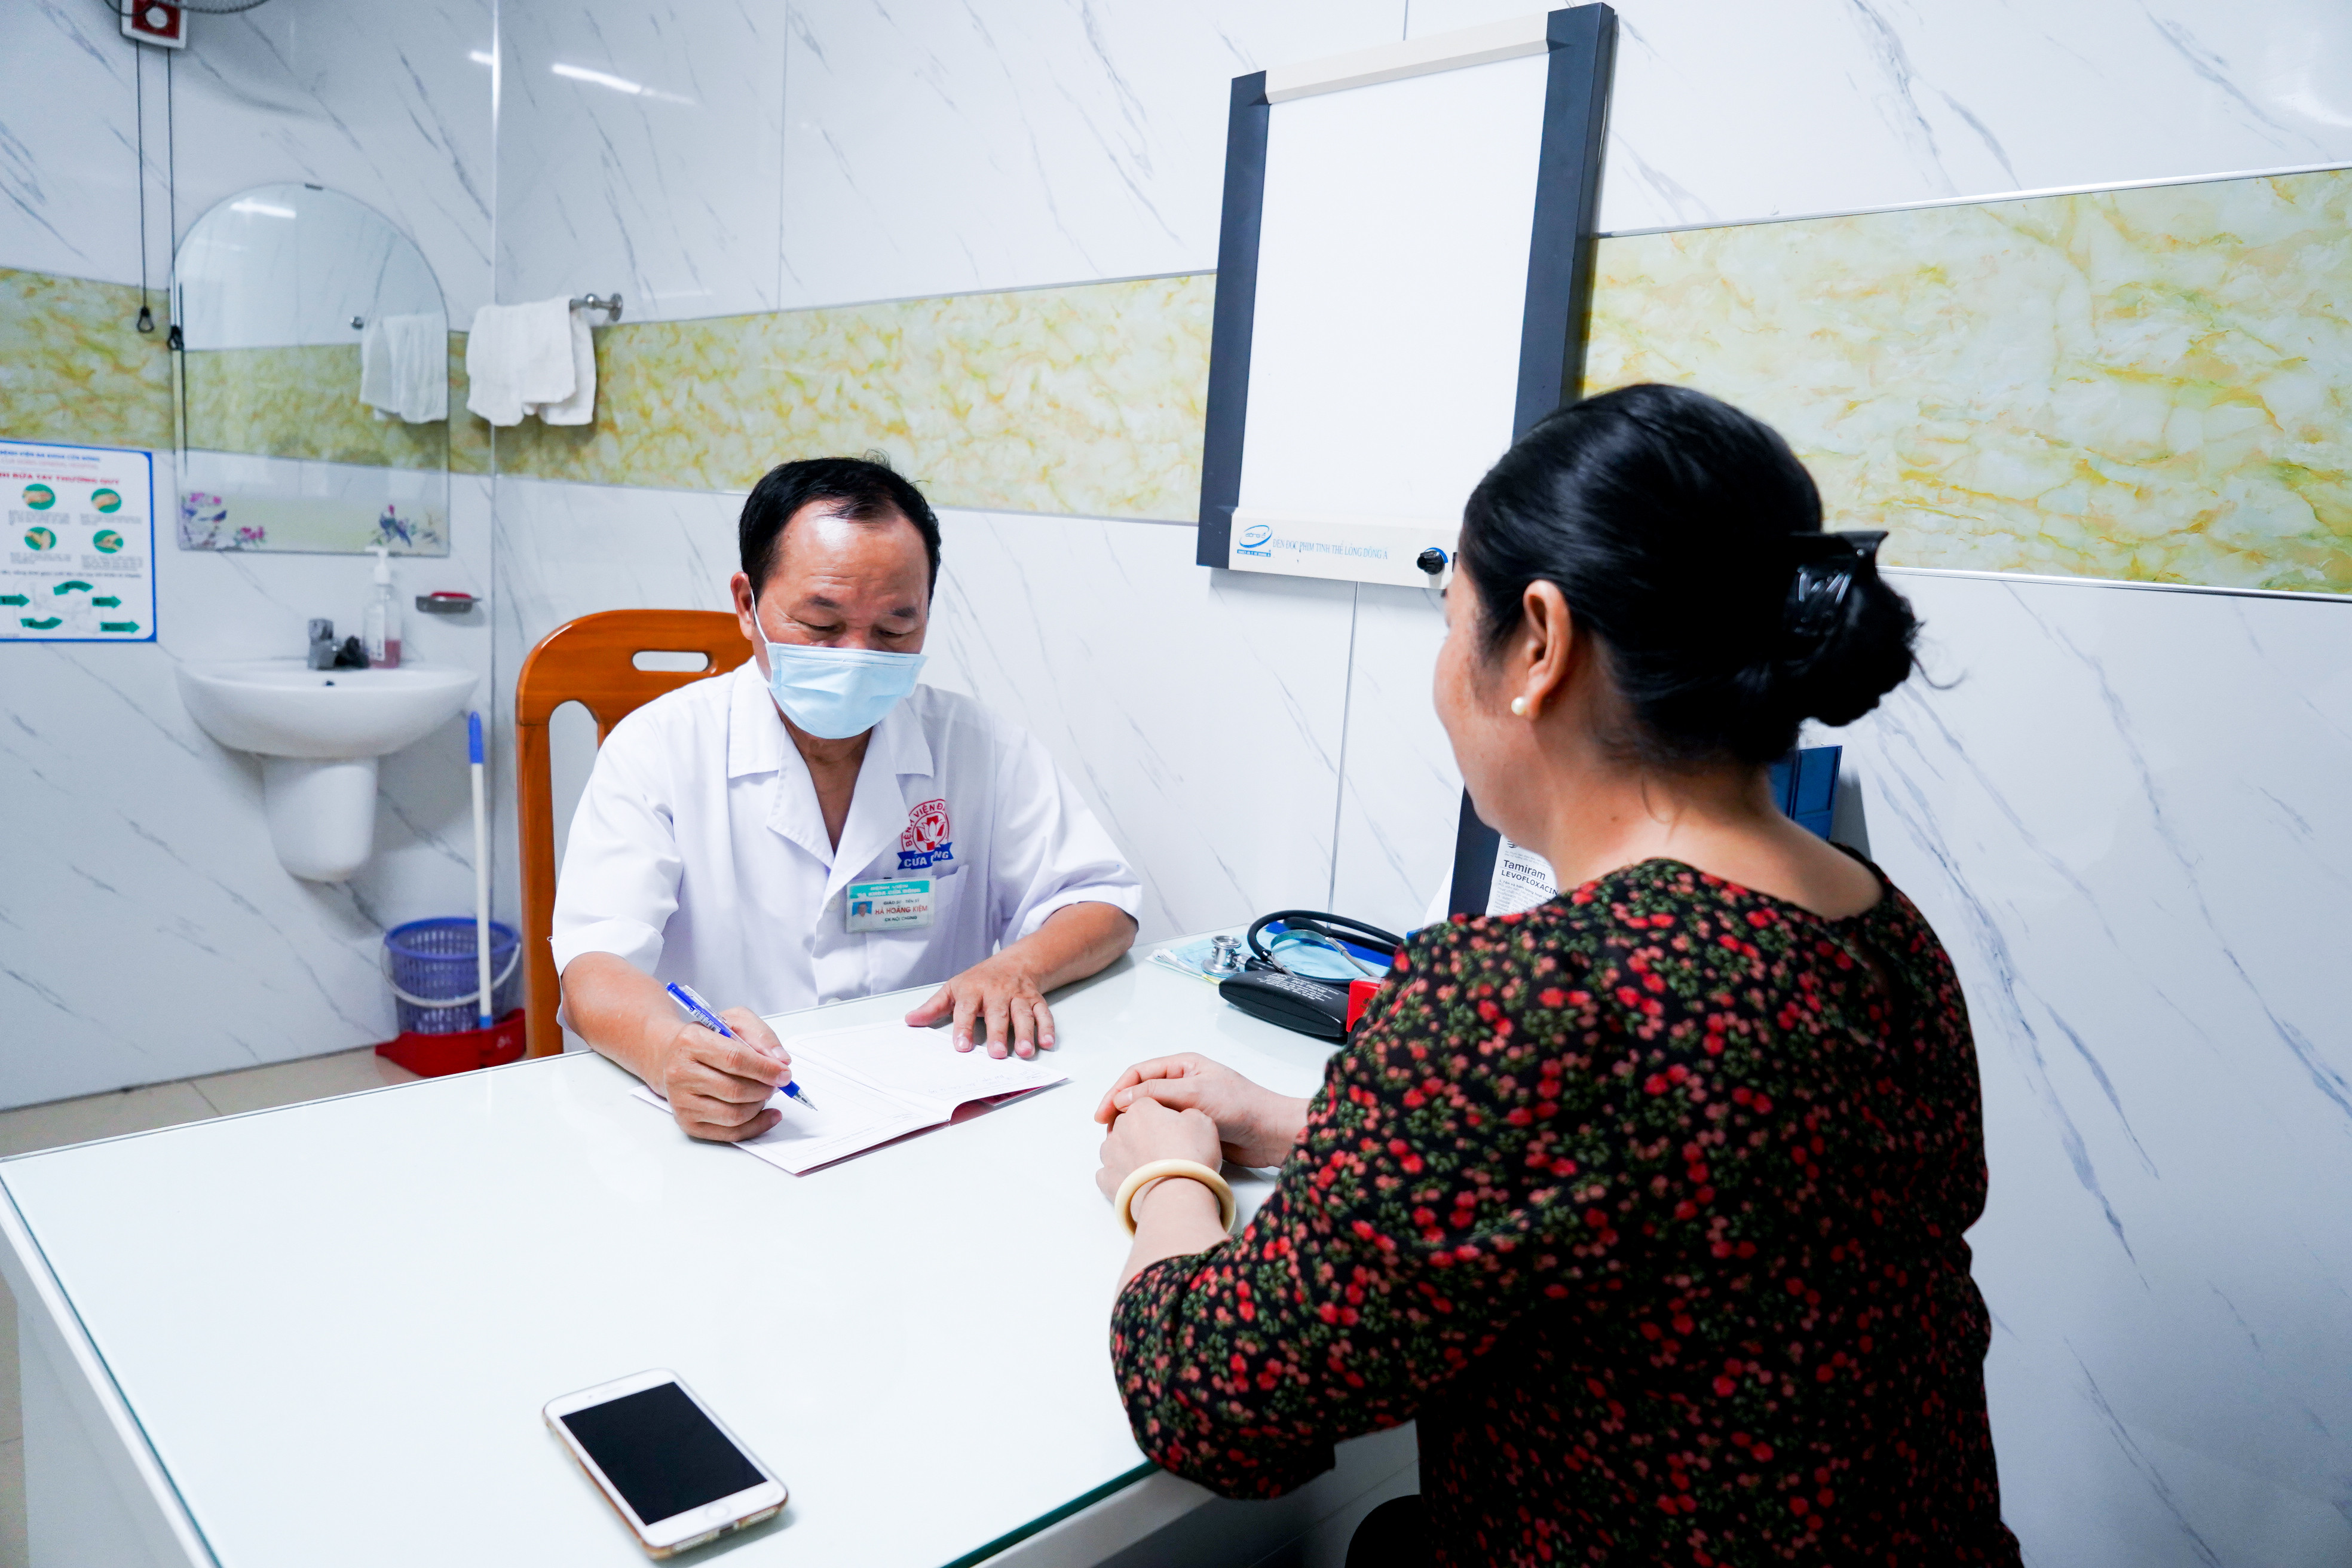 PGS. Tiến sĩ Hà Hoàng Kiệm hiện đang khám và điều trị trực tiếp tại phòng khám Giáo sư, Bệnh viện Đa khoa Cửa Đông. Ảnh: Phương Anh